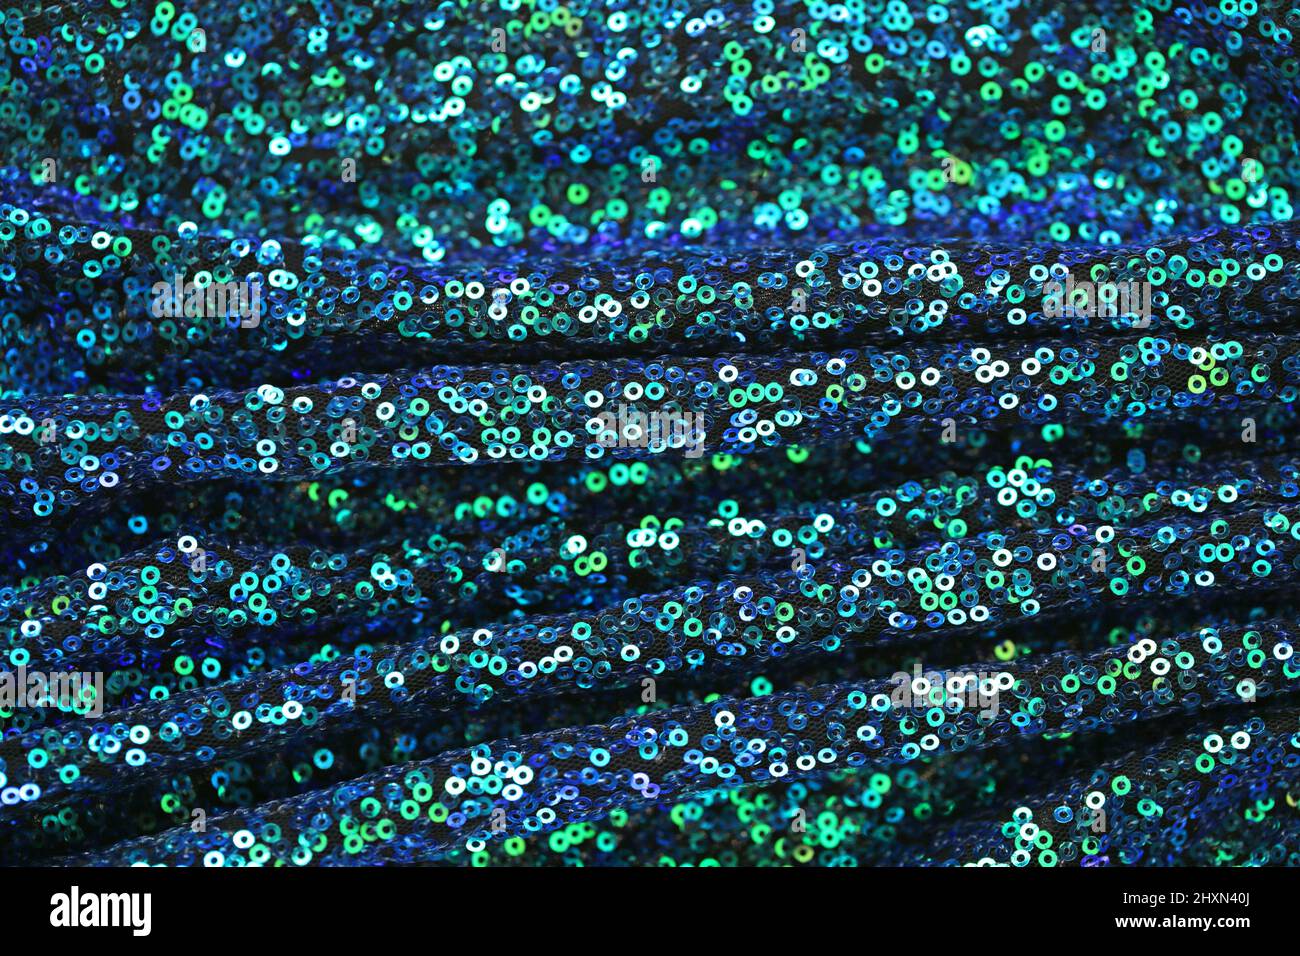 Stoff mit schimmernden Pailletten.Grün und blau Pailletten Hintergrund.Schuppen Hintergrund.glänzende Oberfläche in blauen und grünen Tönen. Schillernde Pailletten Textur. Stockfoto